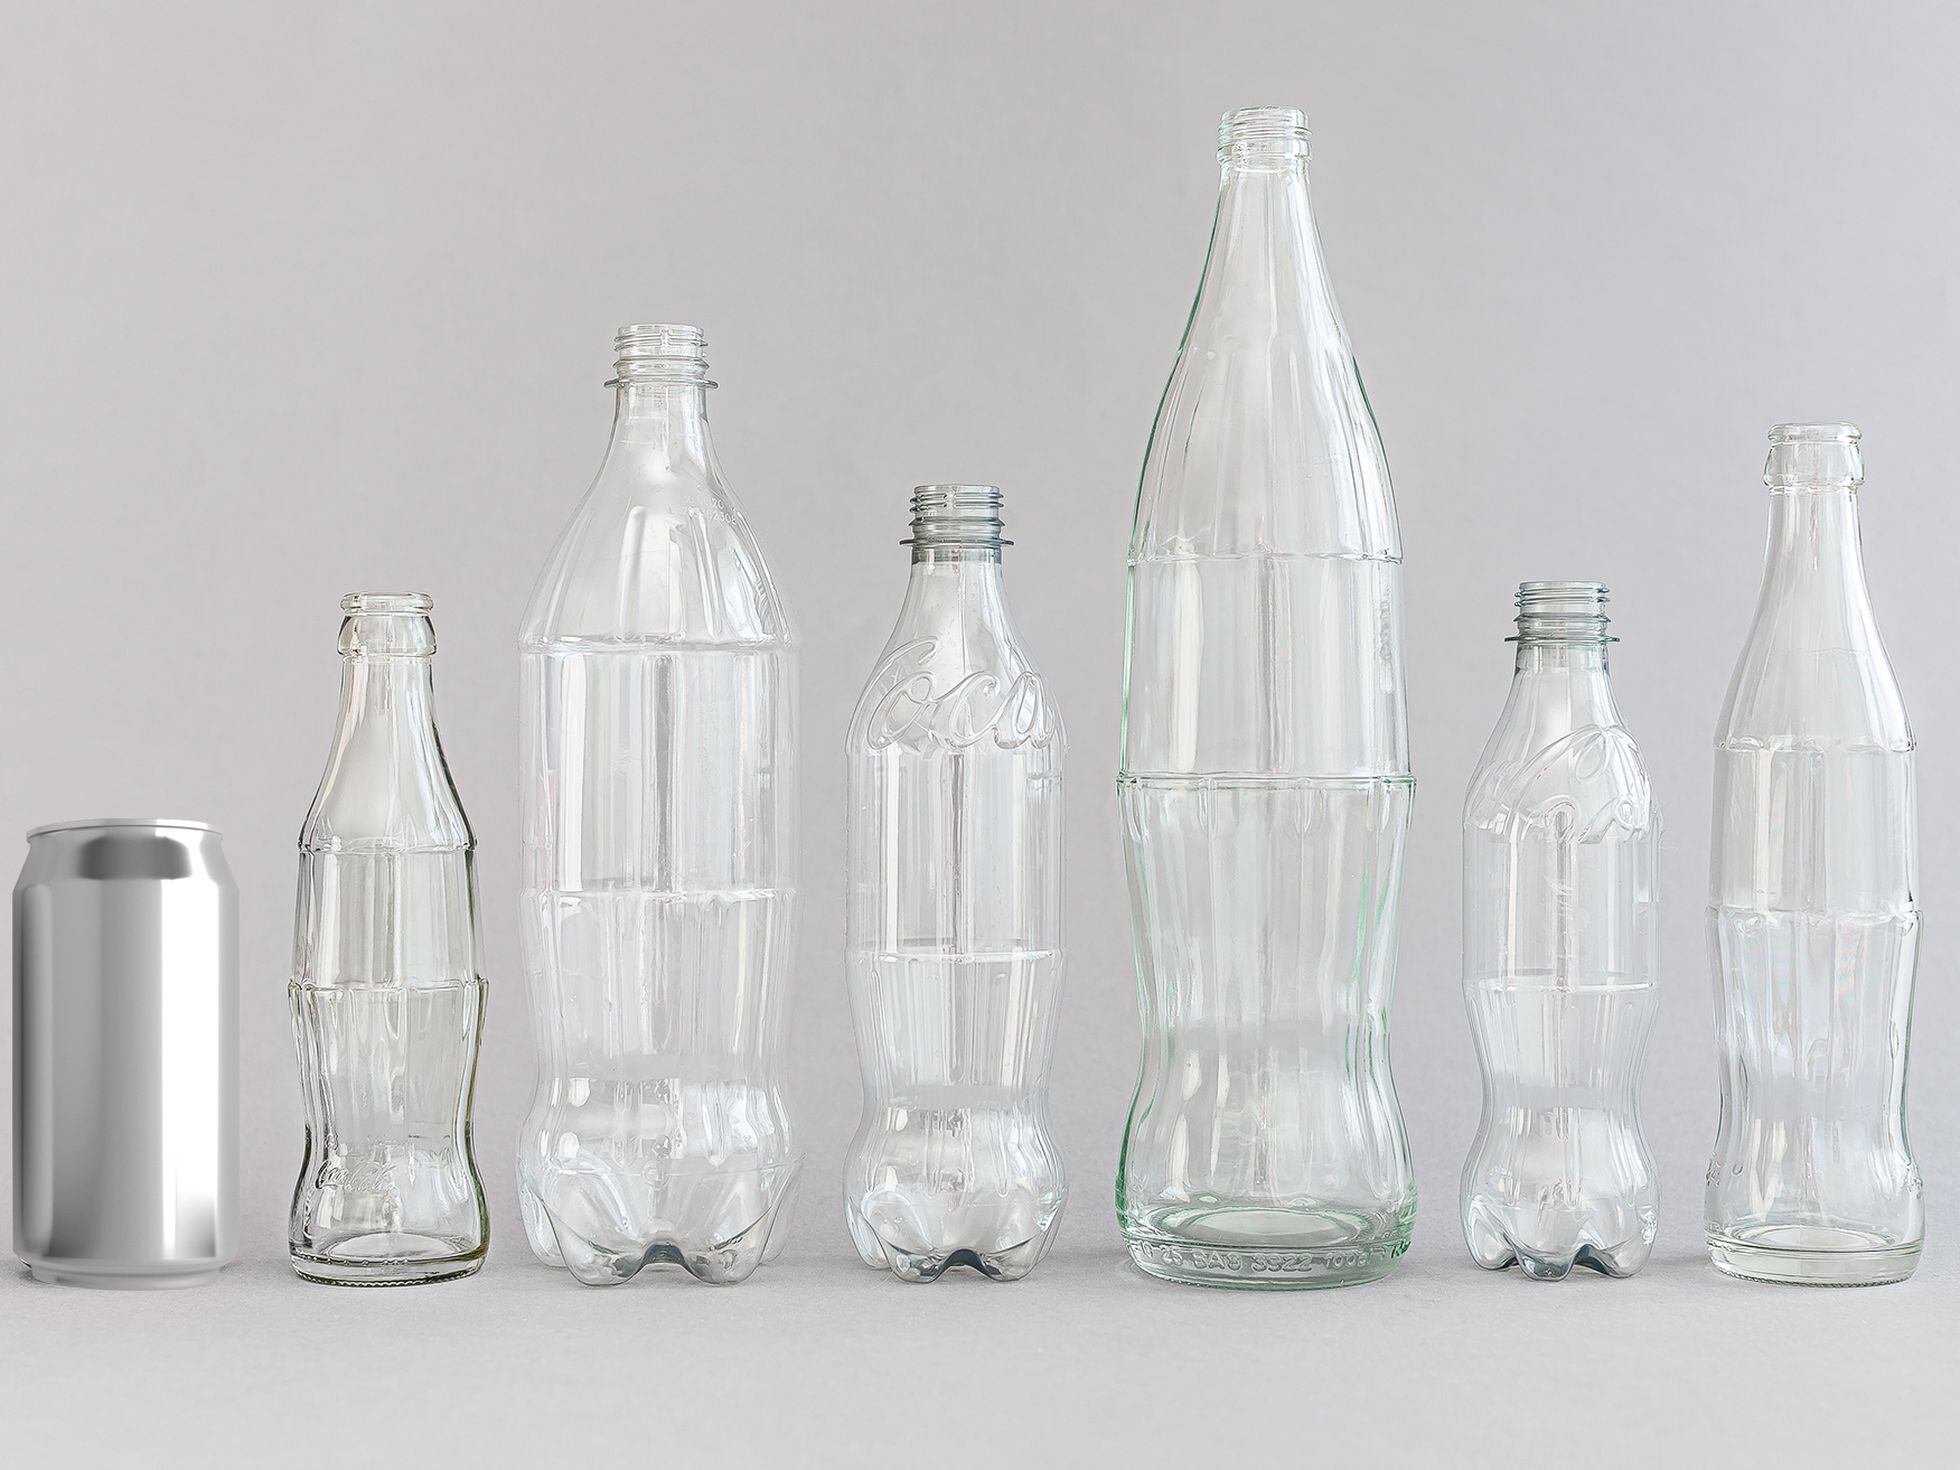 Cuánto vidrio reciclado puede contener una botella? >> Ecolaboratorio >>  Blogs EL PAÍS